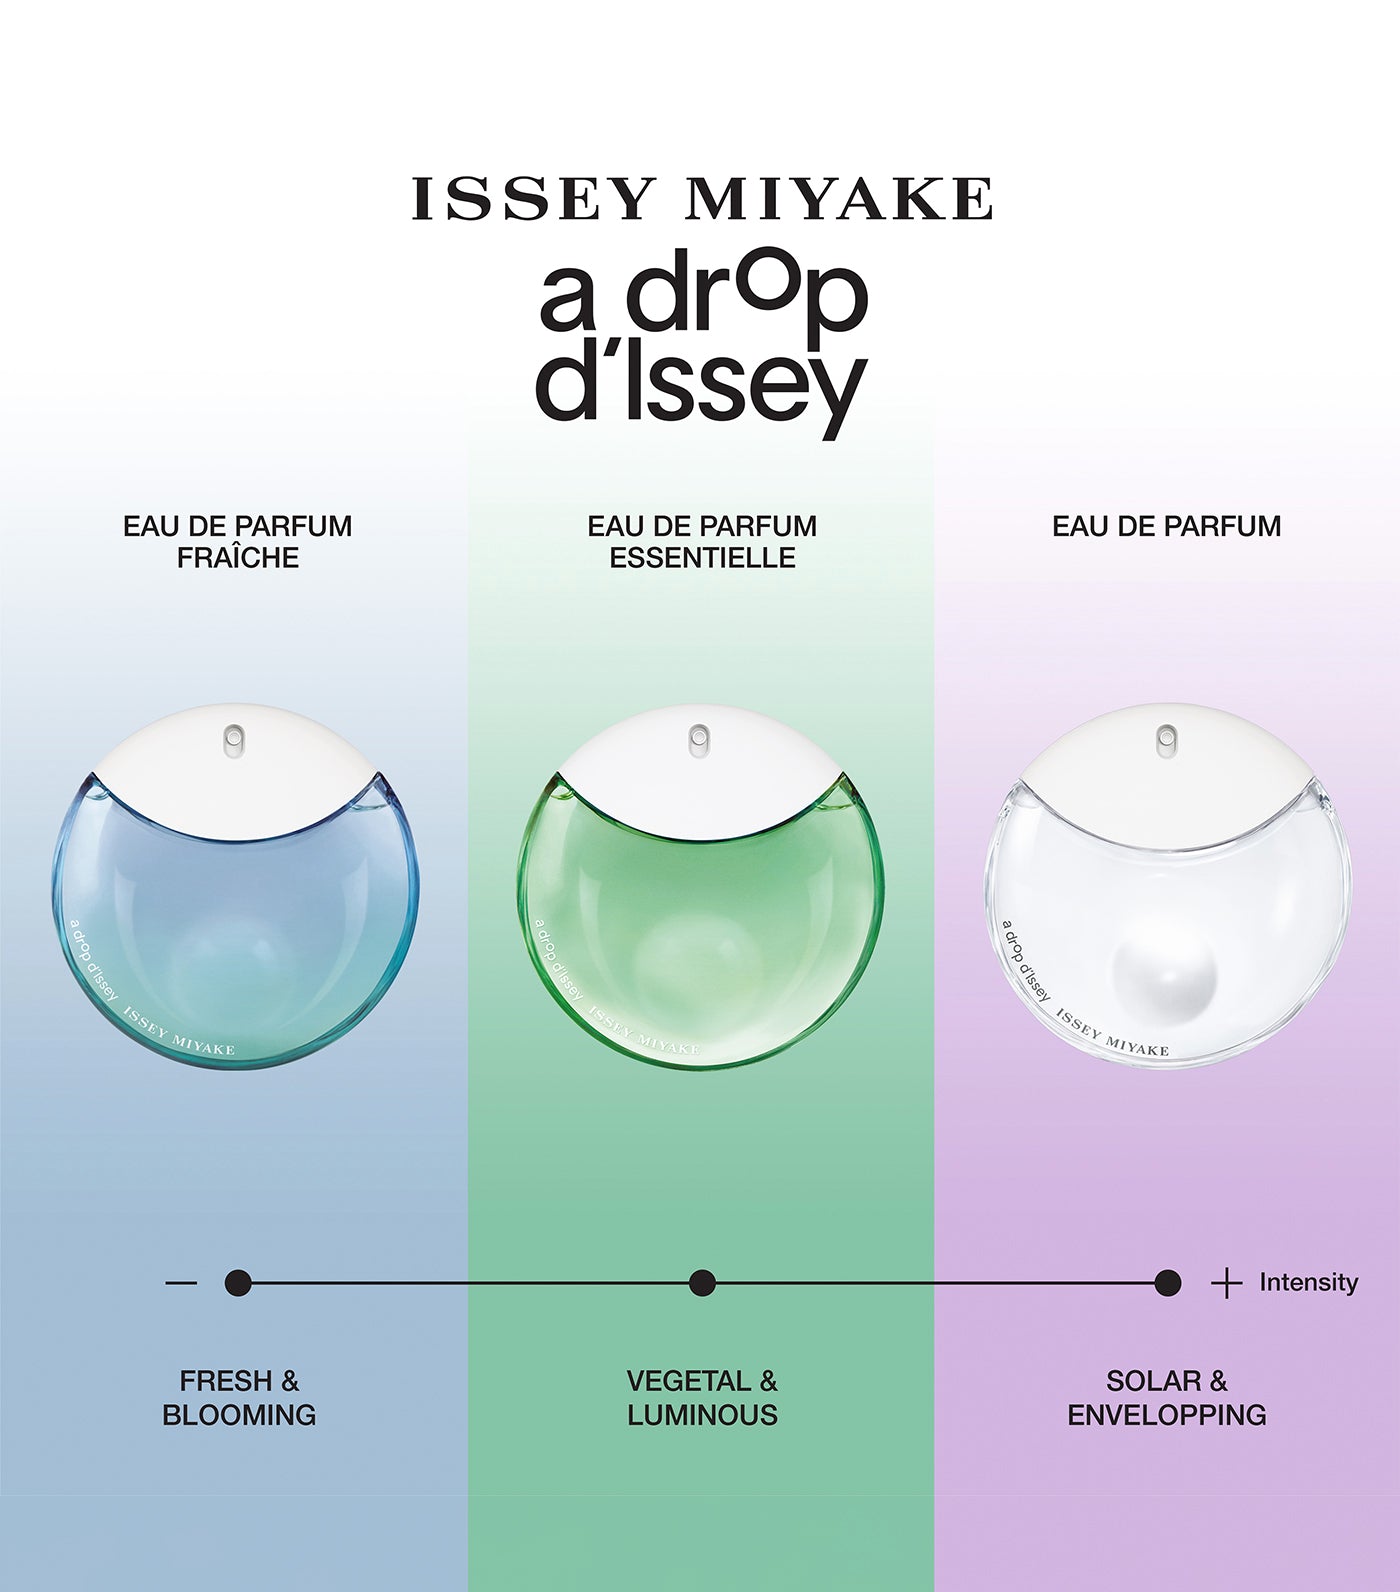 A Drop d'Issey Eau de Parfum Essentielle